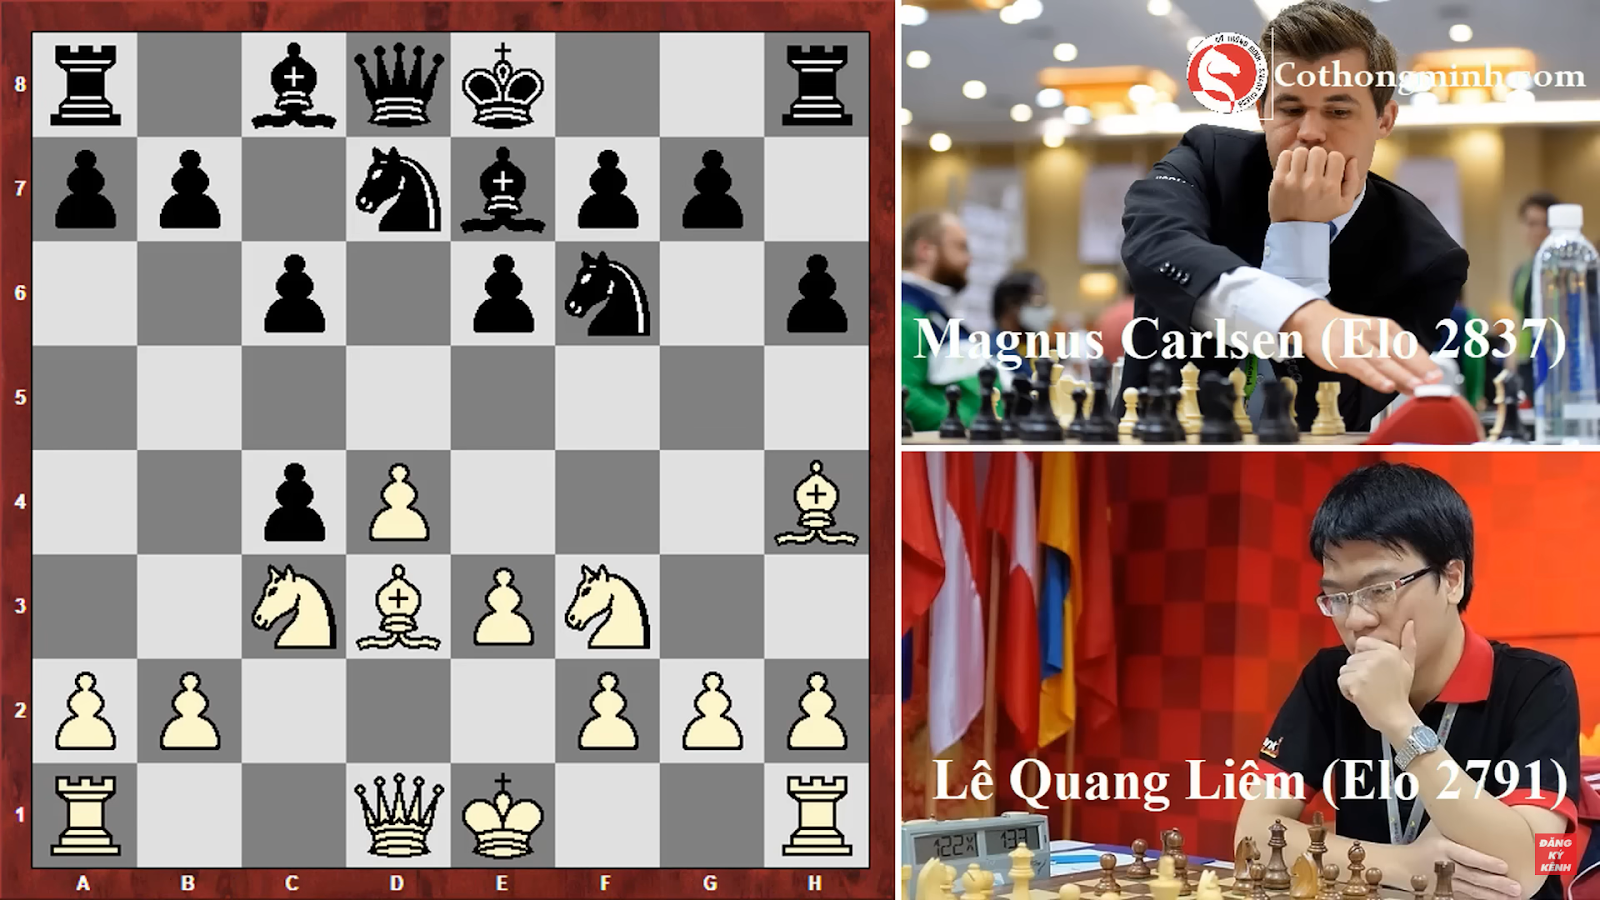 Một thế cờ trung cuộc phức tạp giữa kì thủ Quang Liêm và vua cờ Carlsen